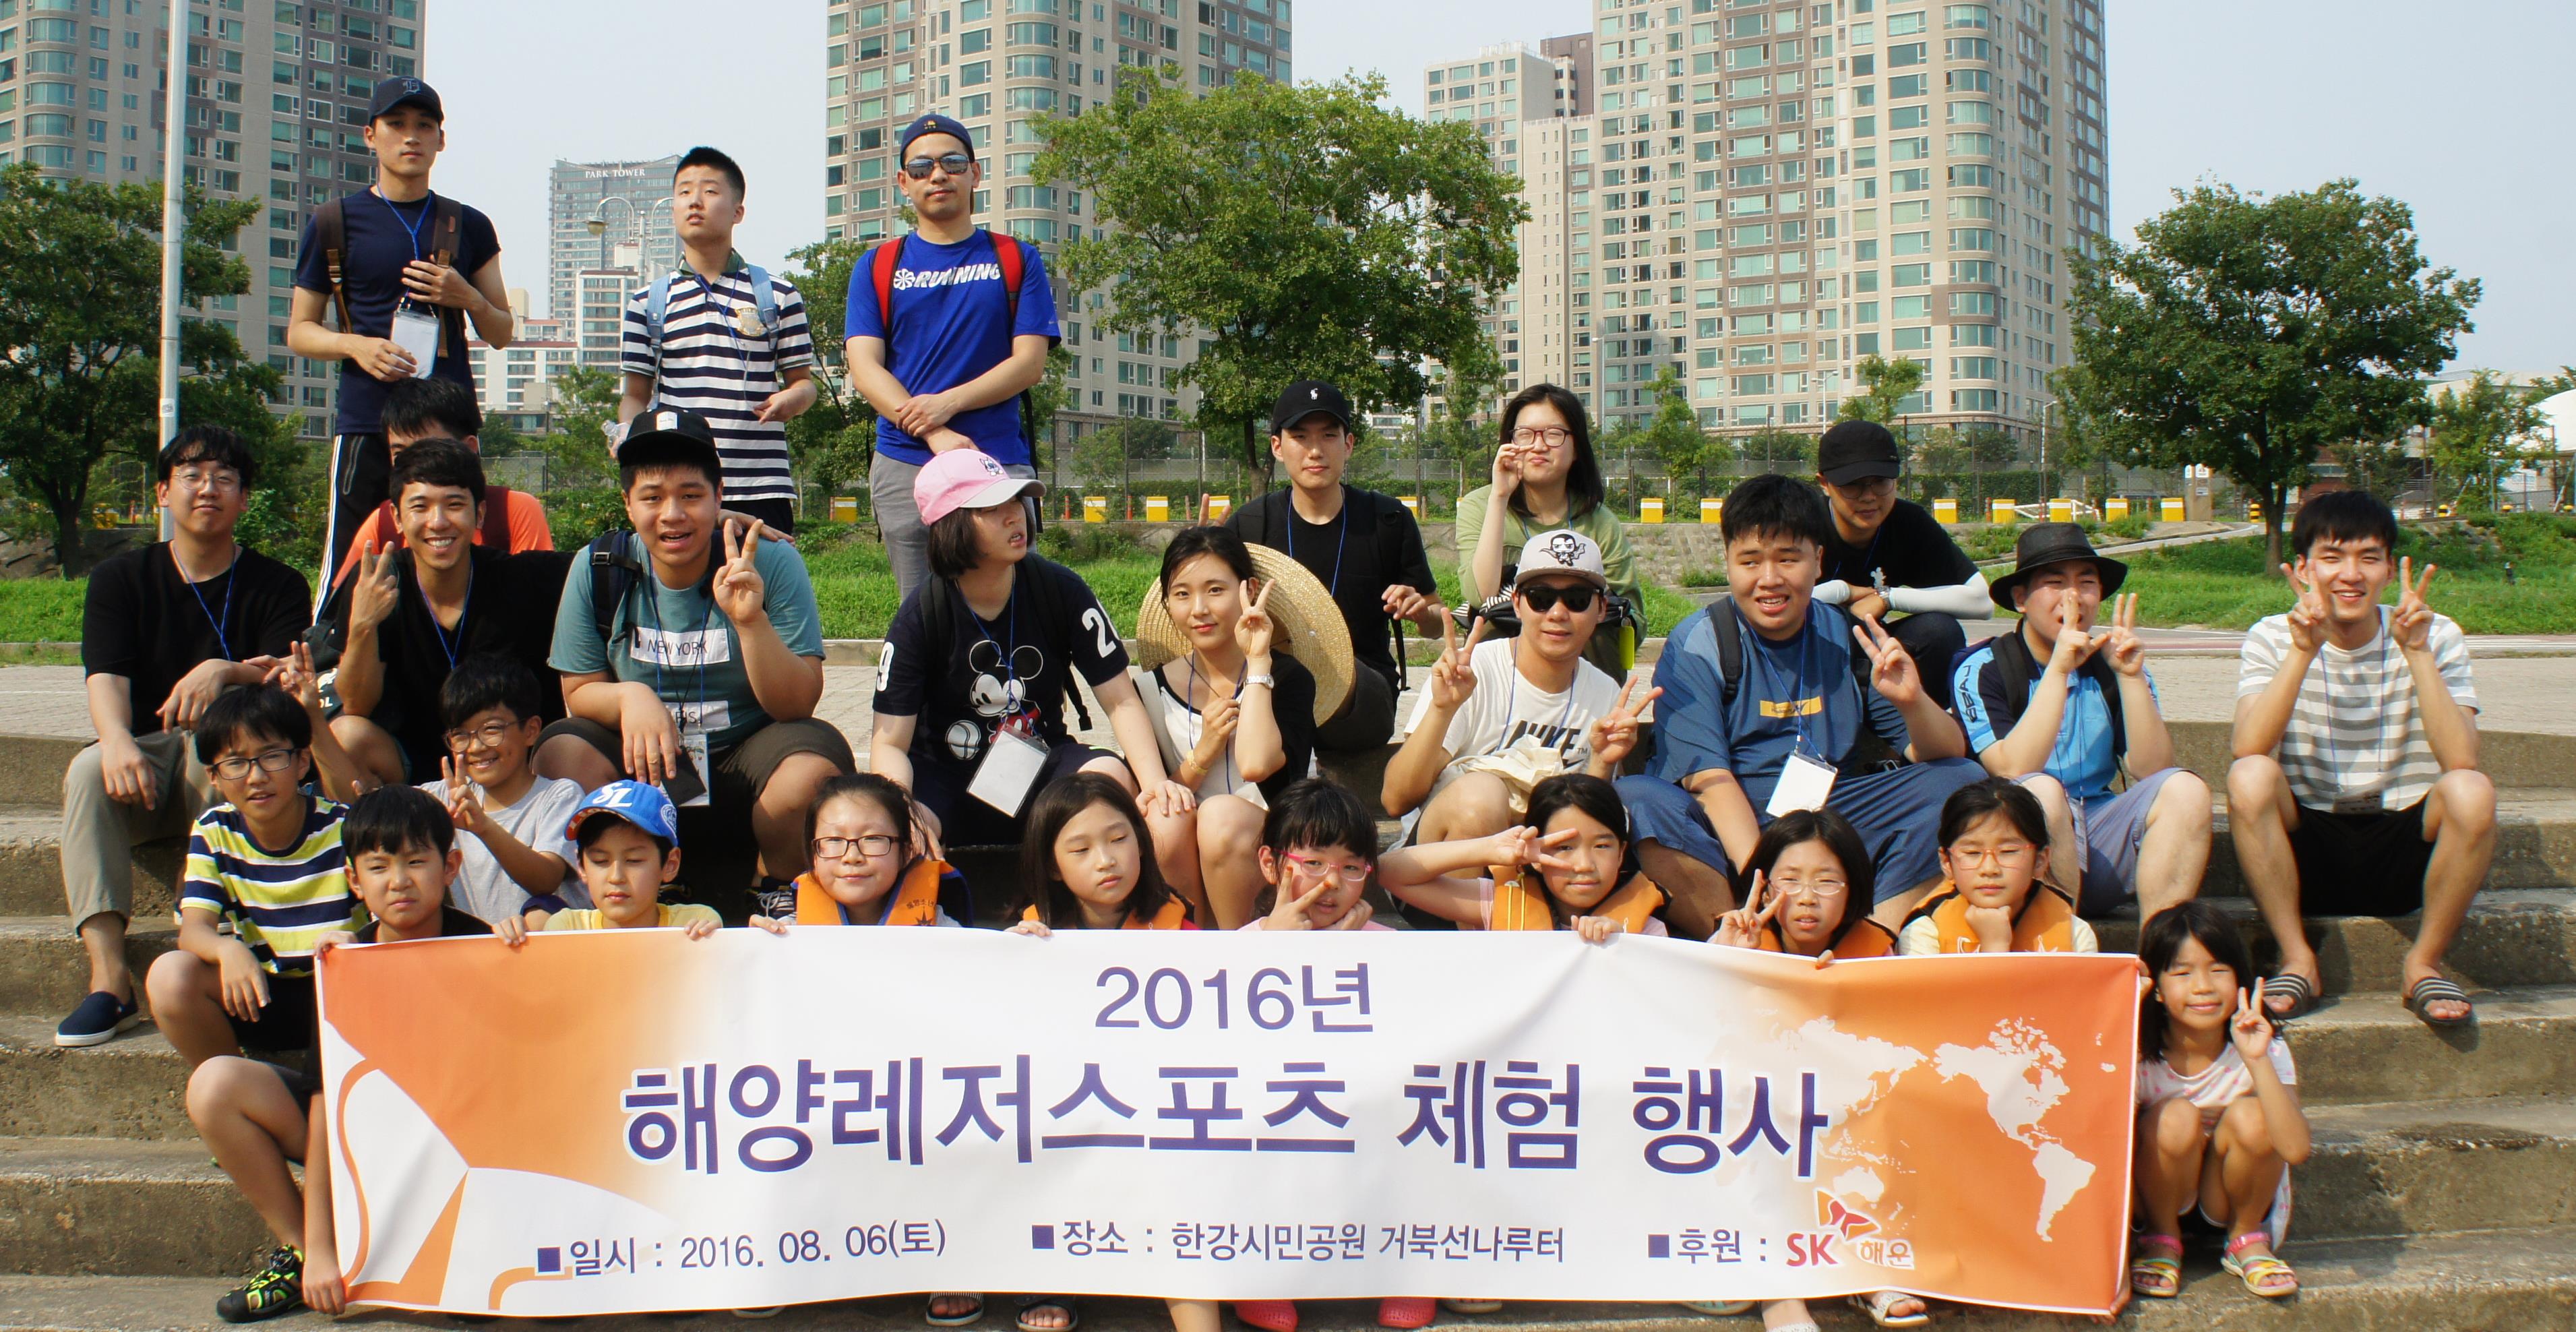 2016년 저소득층 및 장애아동 대상 ‘해양레저스포츠체험” 행사 개최